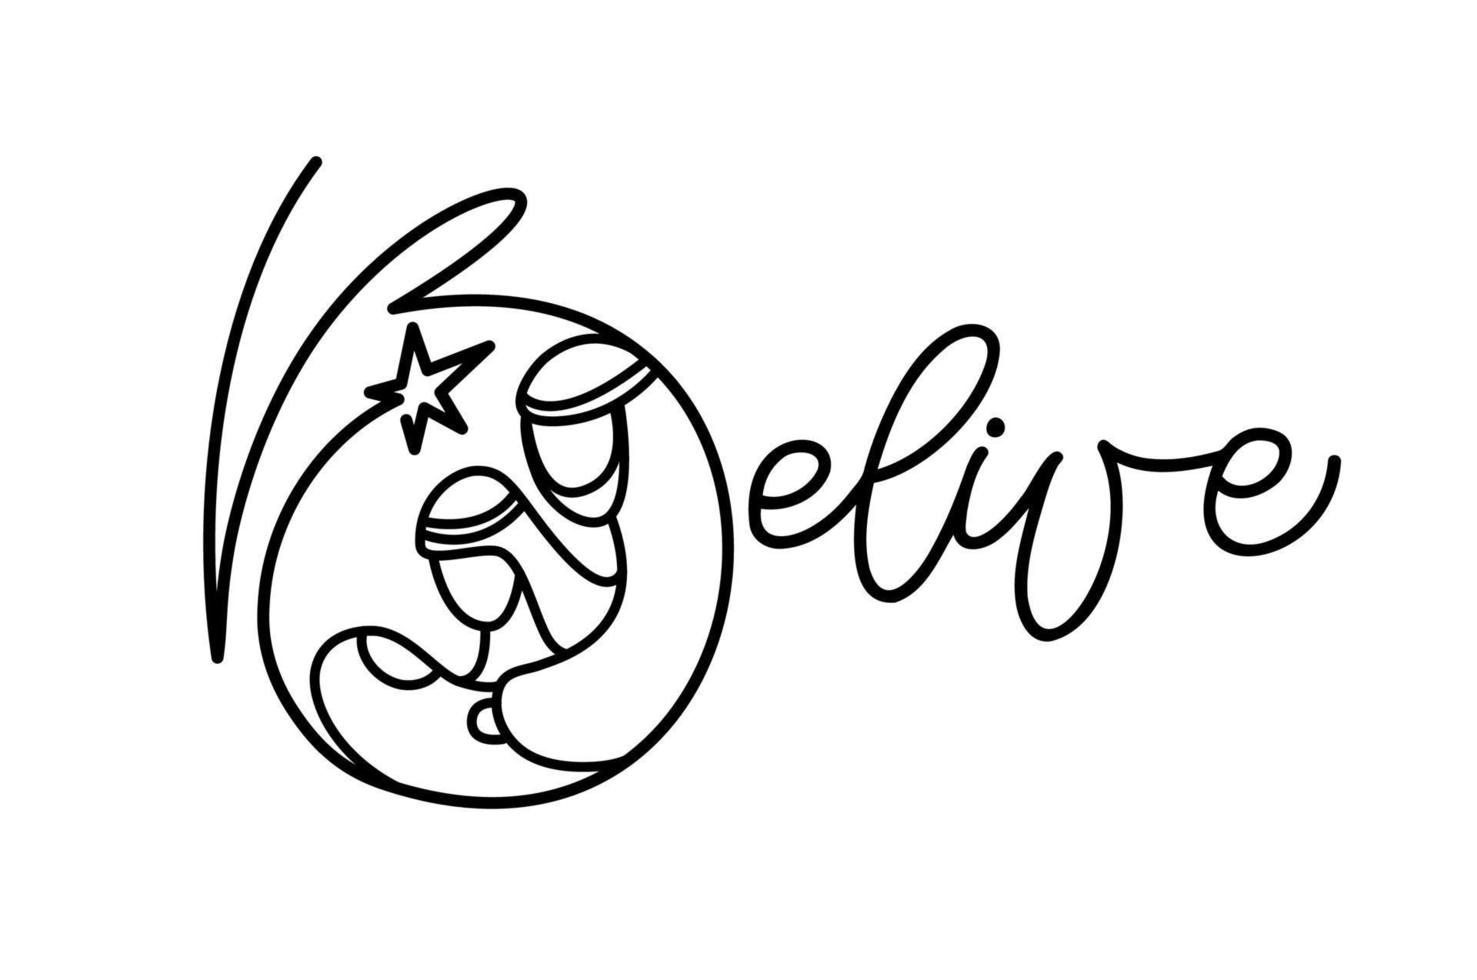 belive texte de calligraphie monoline et vecteur de noël scène de la nativité religieuse de l'enfant jésus avec mary joseph et star. dessin au trait d'art minimaliste, impression de vêtements et création de logo